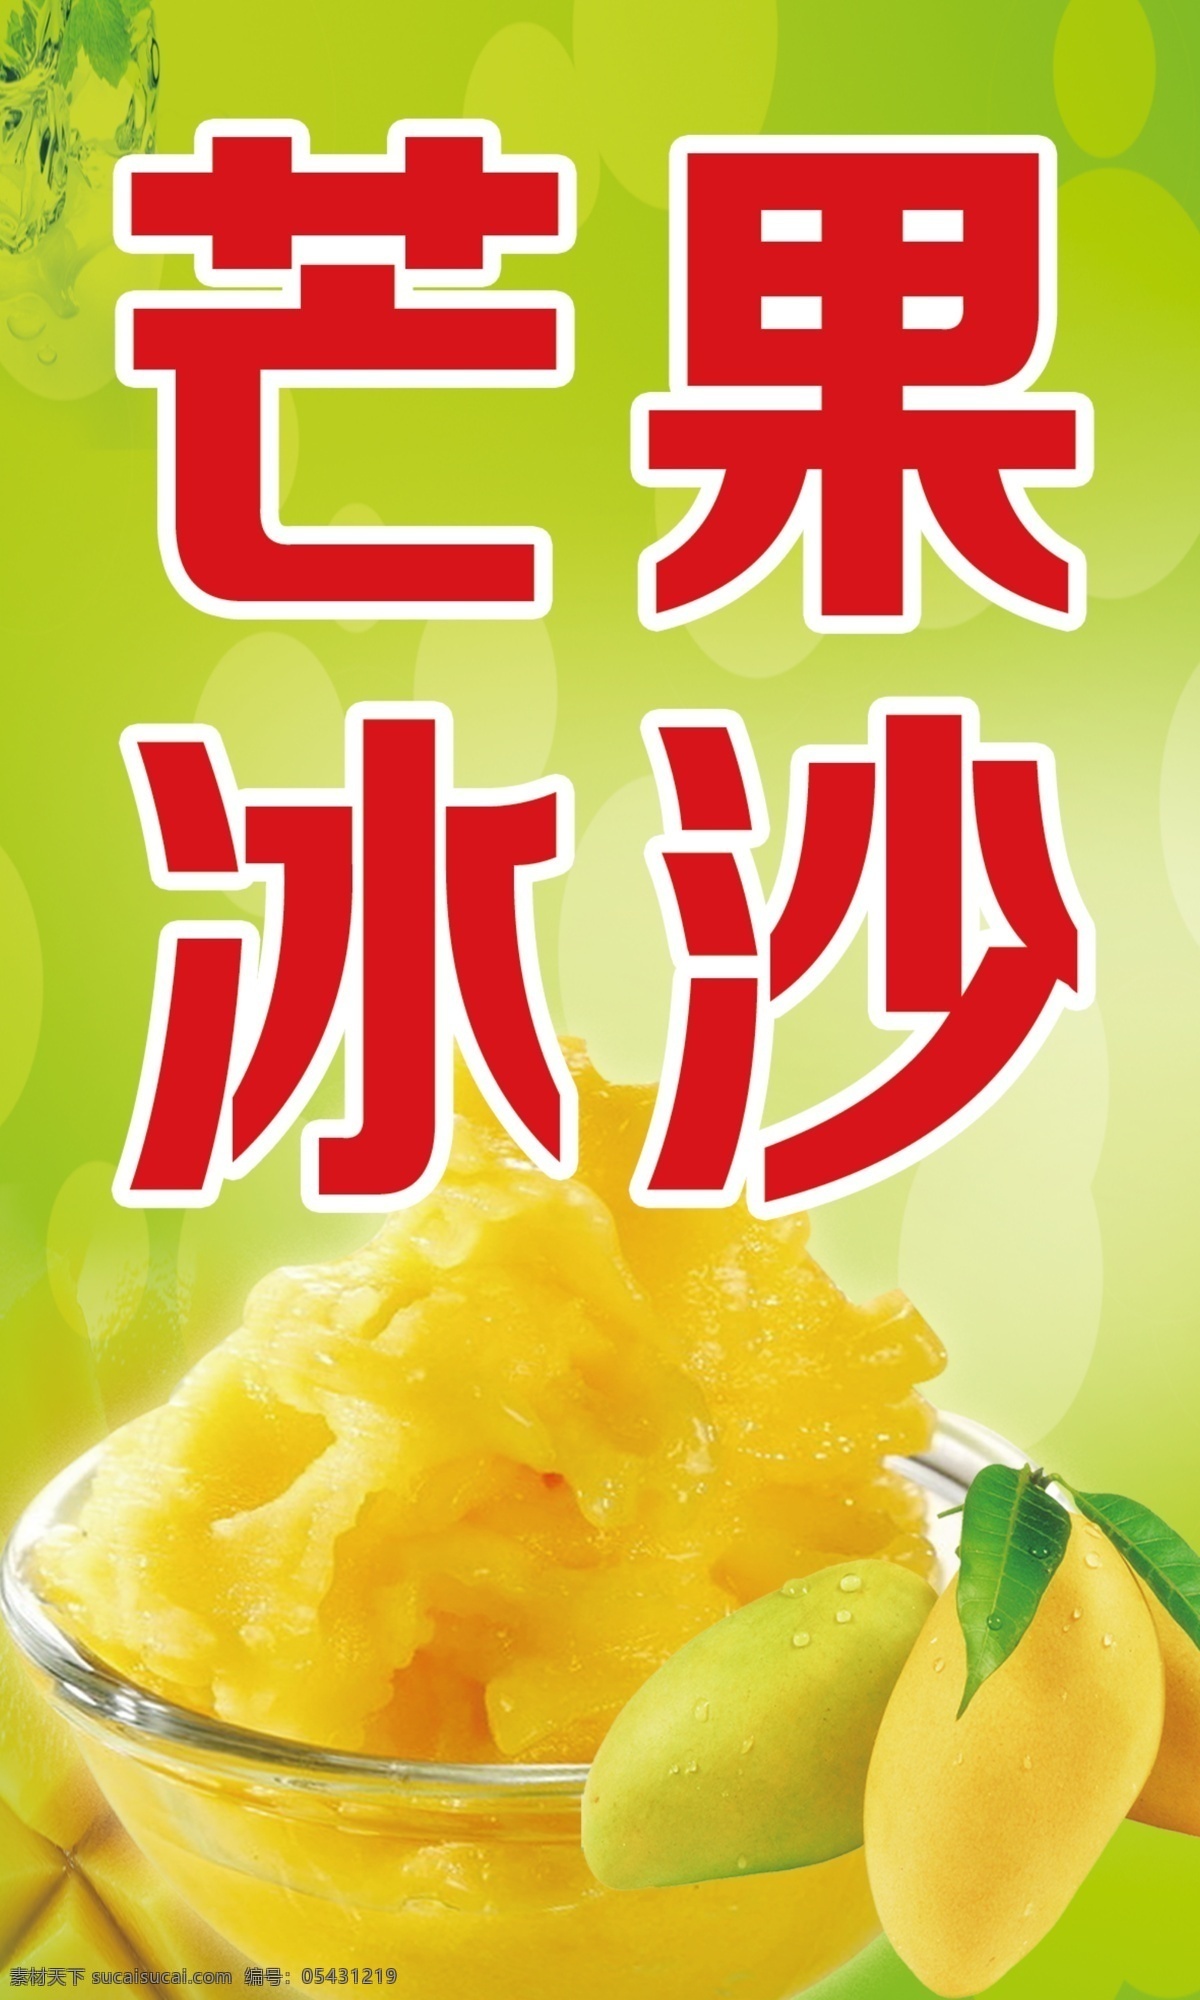 芒果 冰沙 海报 奶茶店 宣传画 绿色